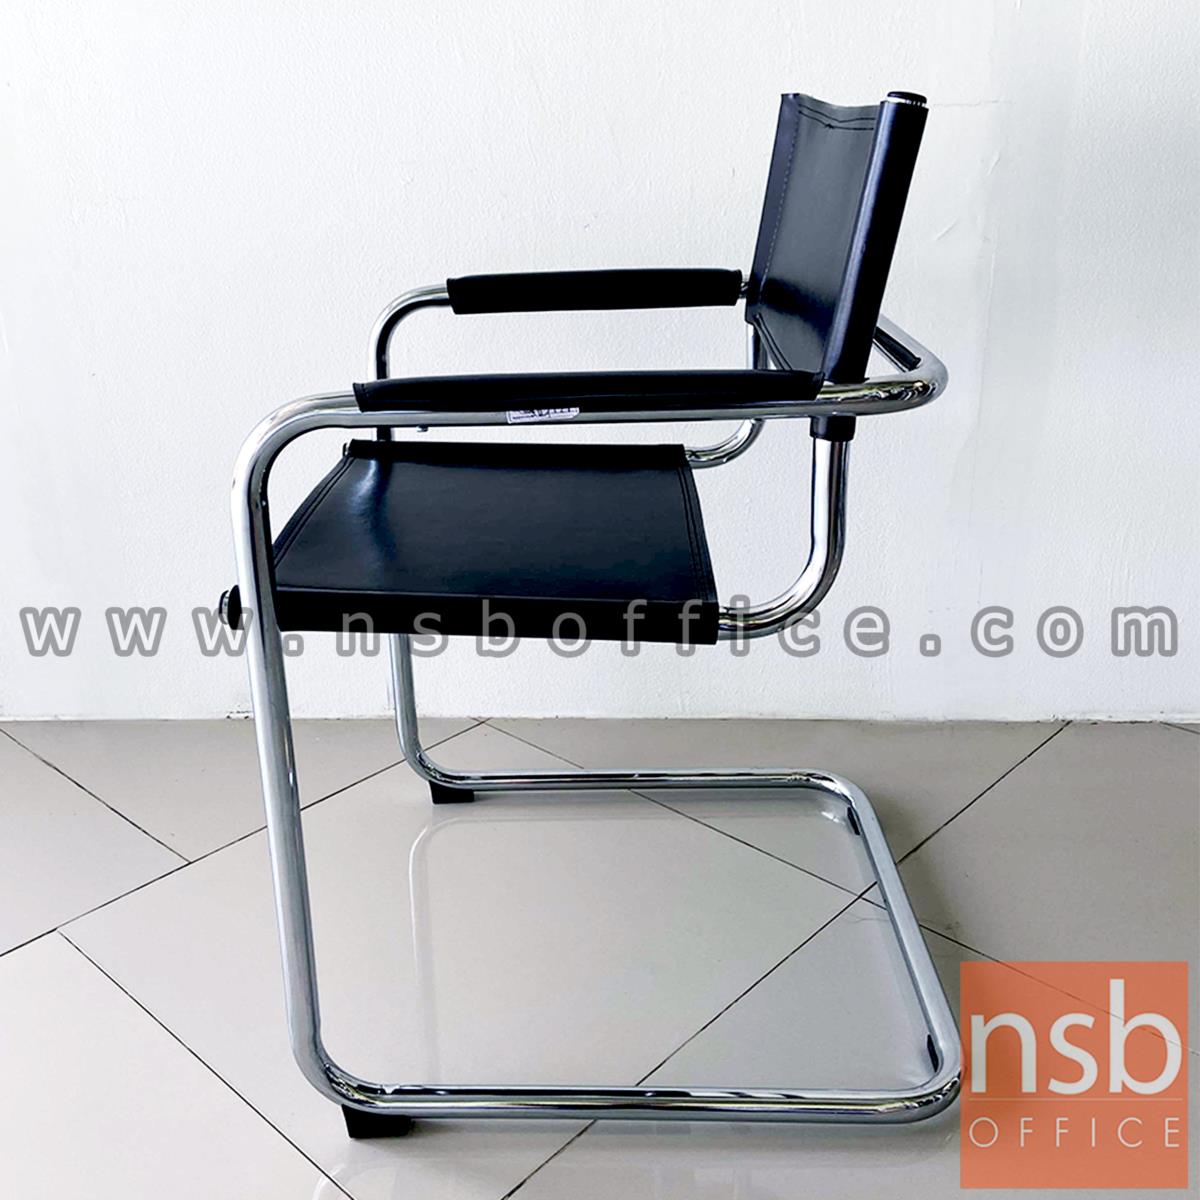 เก้าอี้อเนกประสงค์ รุ่น blackmagic (แบล็กเมจิก)  โครงเหล็กโครเมี่ยม